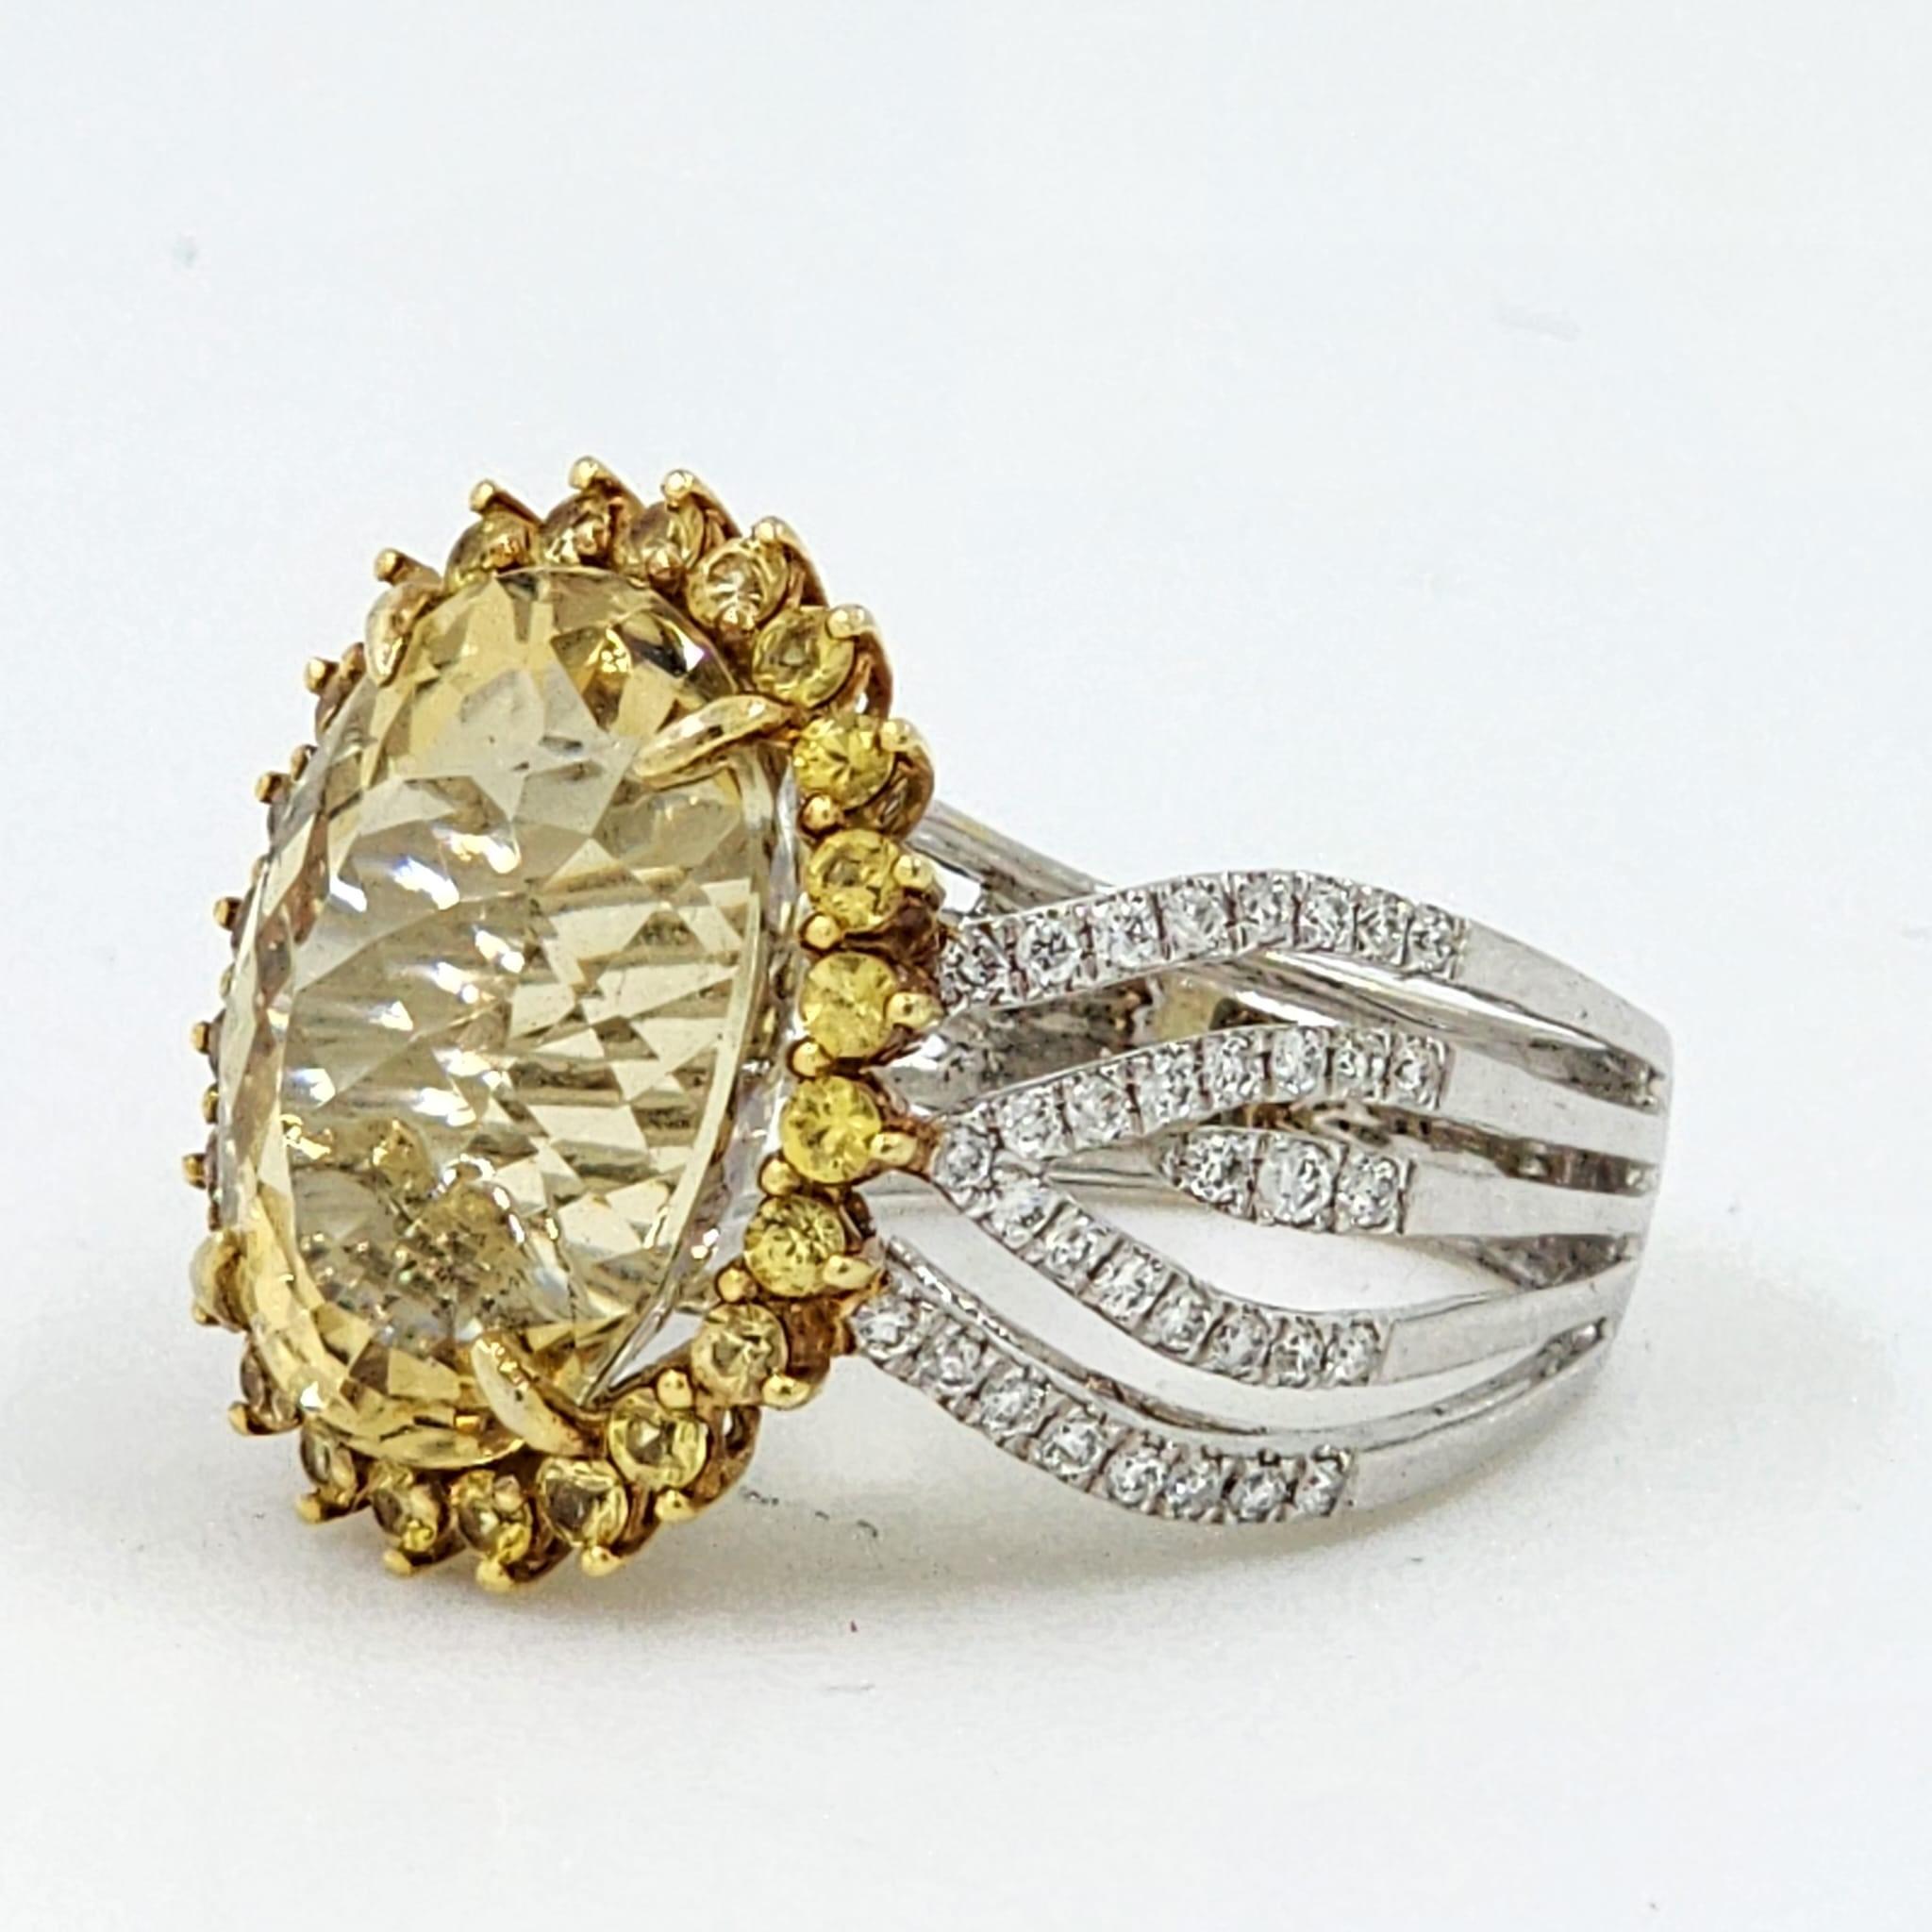 Der Vintage 9.55Ct Yellow Beryl Yellow Sapphire Diamond Ring ist ein Inbegriff von Opulenz, der das Beste vergangener Epochen nahtlos mit der Handwerkskunst von heute verbindet. Der Ring ist in luxuriöses 14 Karat Weißgold gefasst und besitzt ein